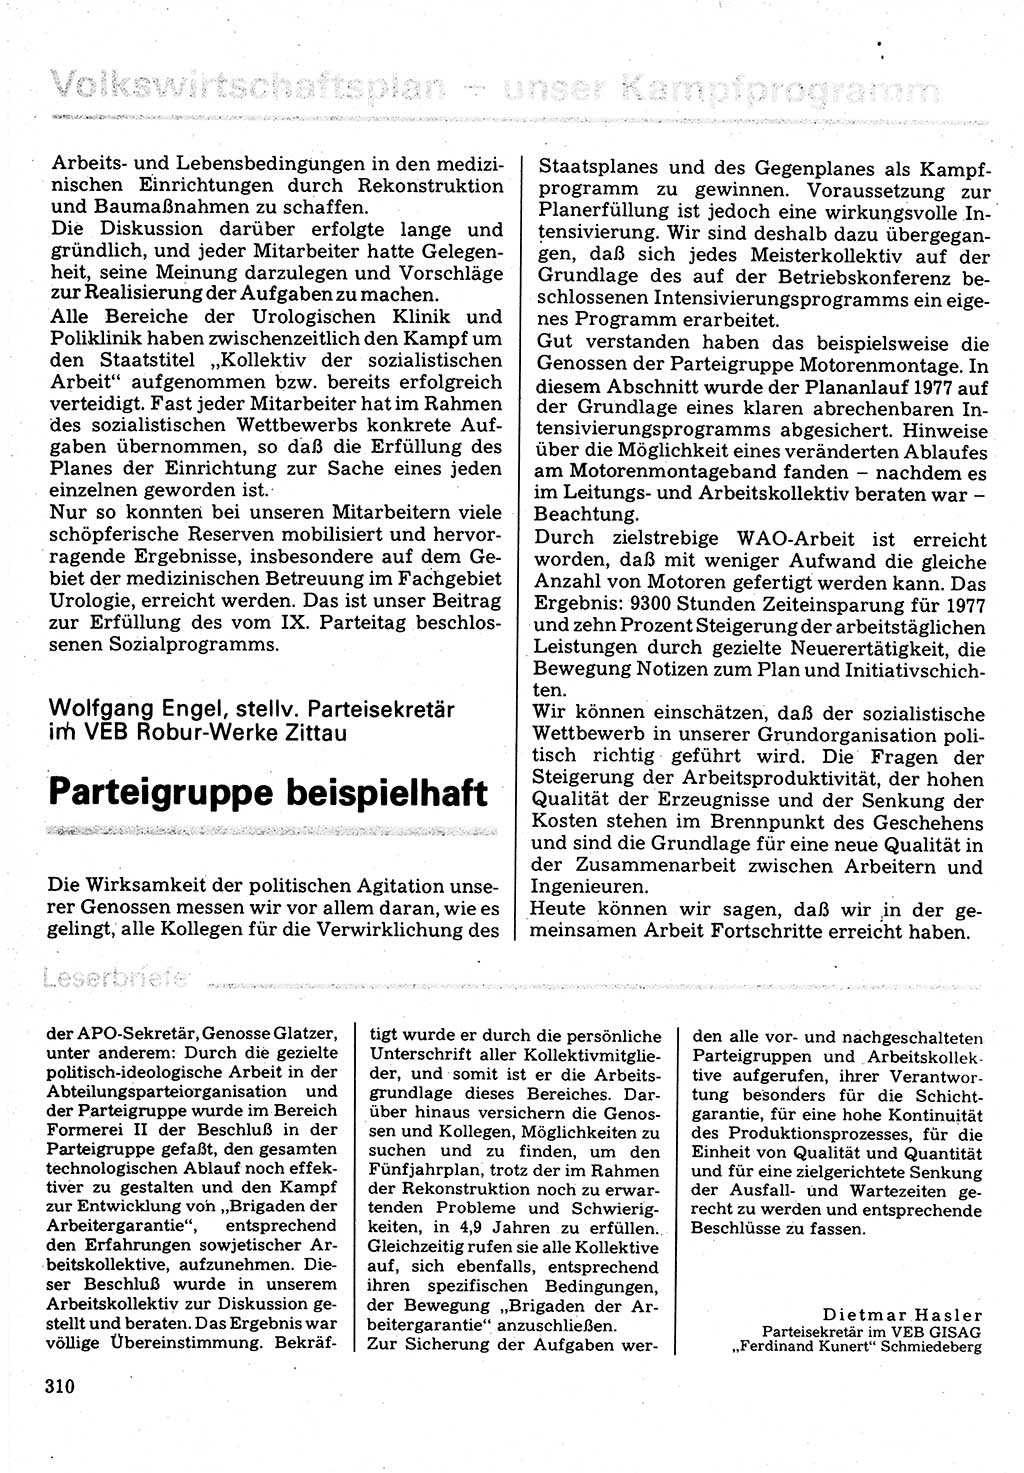 Neuer Weg (NW), Organ des Zentralkomitees (ZK) der SED (Sozialistische Einheitspartei Deutschlands) für Fragen des Parteilebens, 32. Jahrgang [Deutsche Demokratische Republik (DDR)] 1977, Seite 310 (NW ZK SED DDR 1977, S. 310)